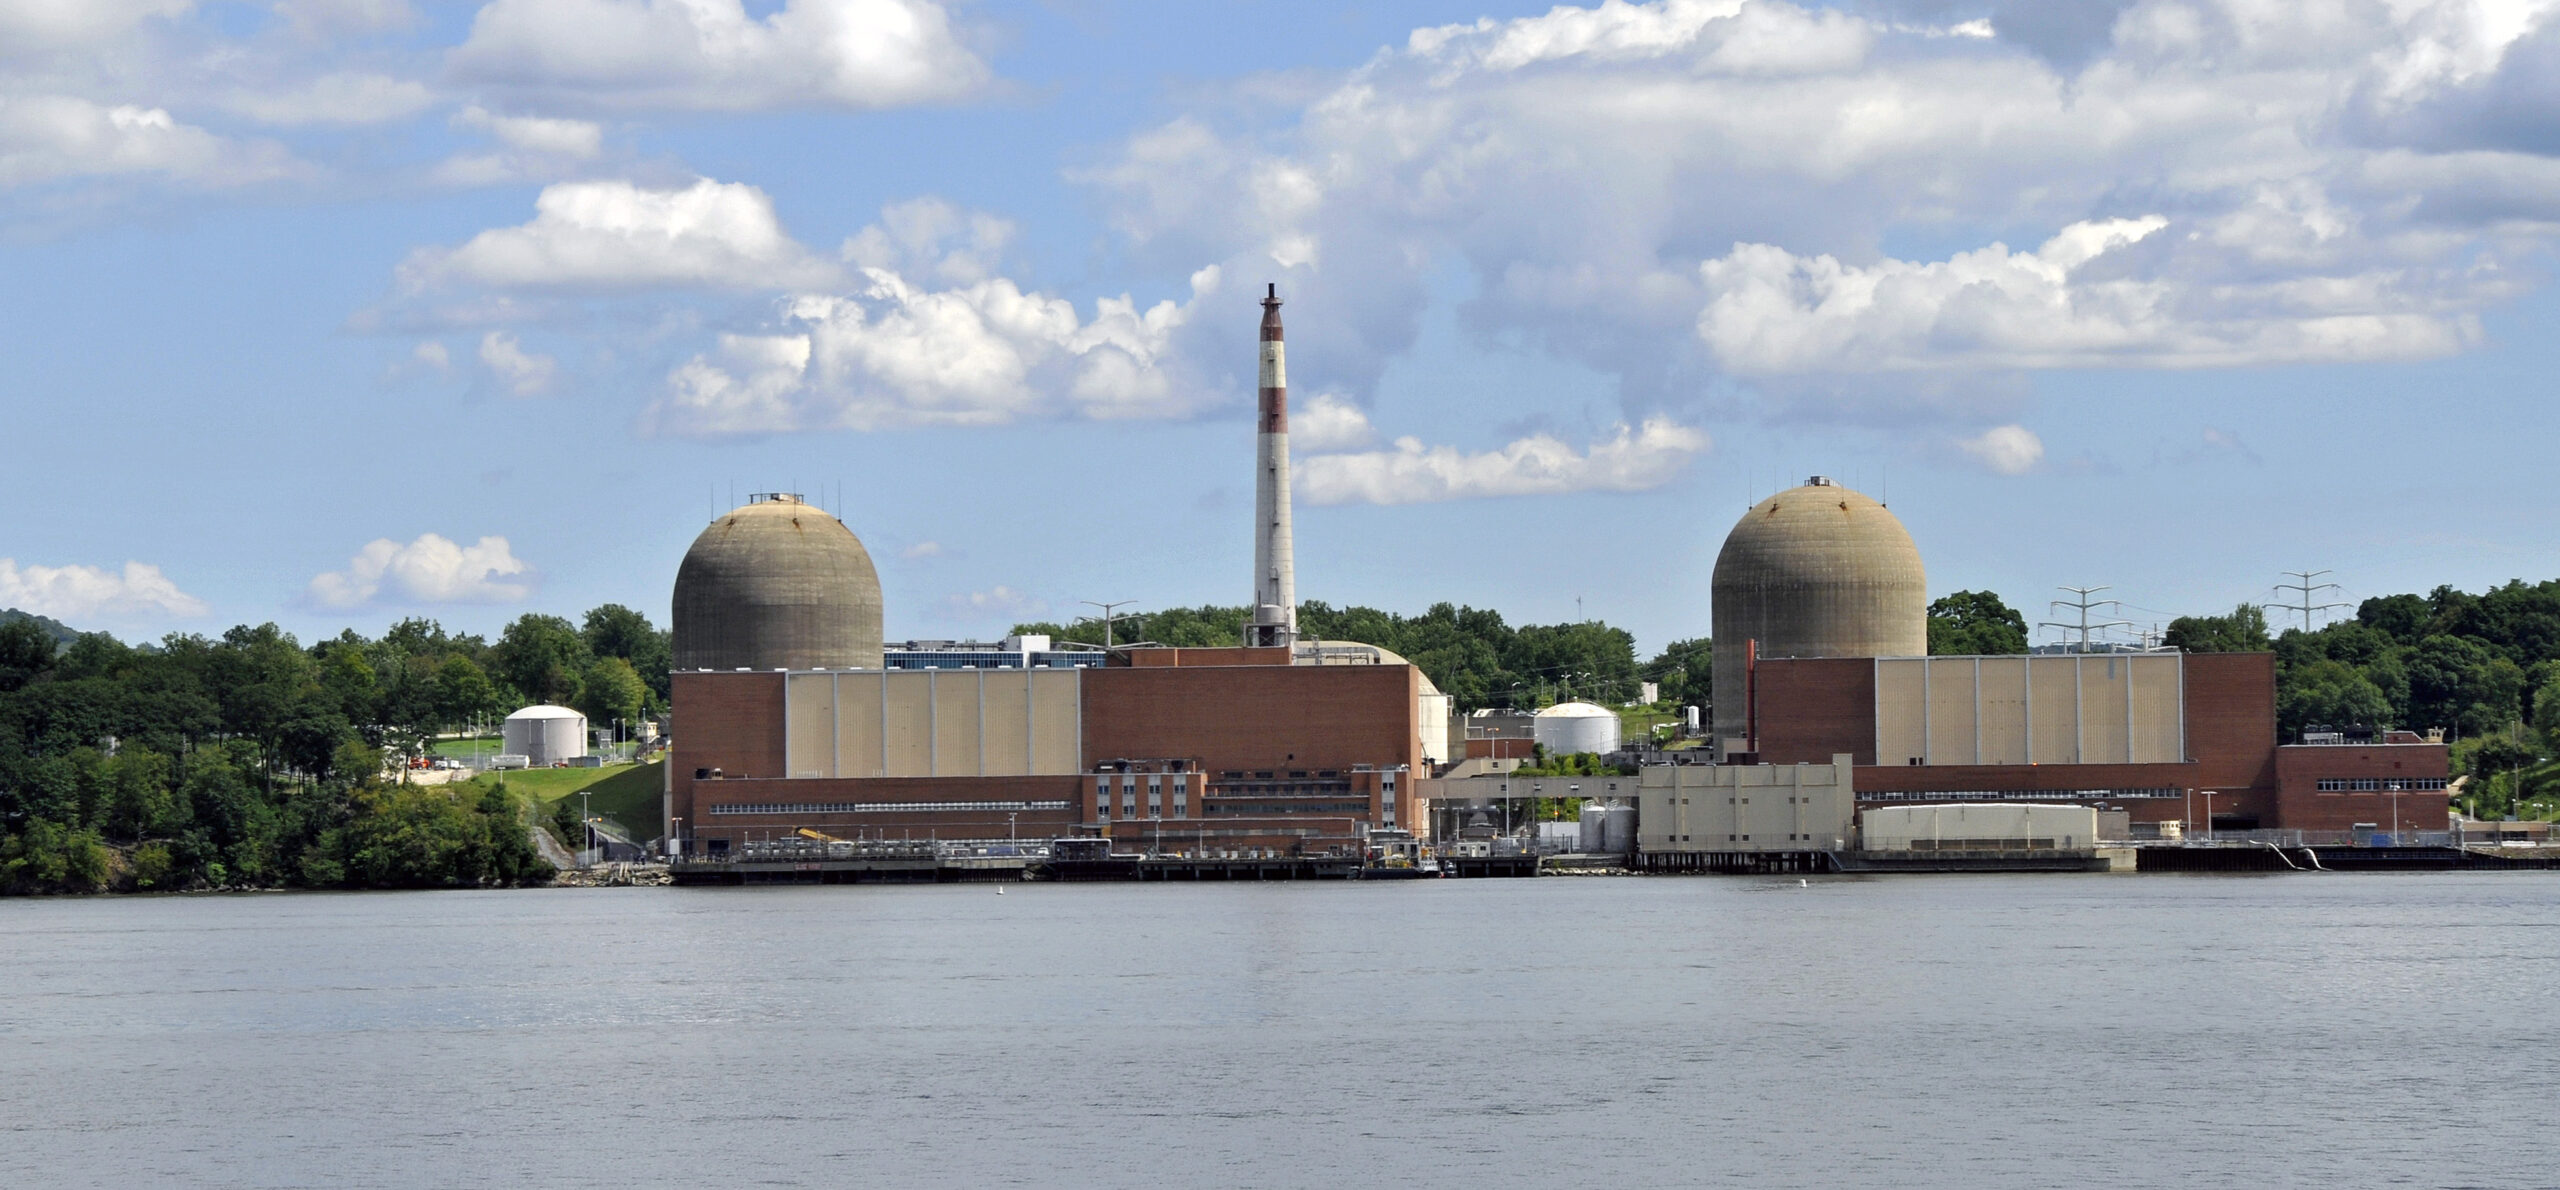 Το Indian Point Energy Center, στο Buchanan στην πολιτεία της Νέας Υόρκης των ΗΠΑ, ήταν η τοποθεσία του πρώτου αντιδραστήρα θορίου στον κόσμο